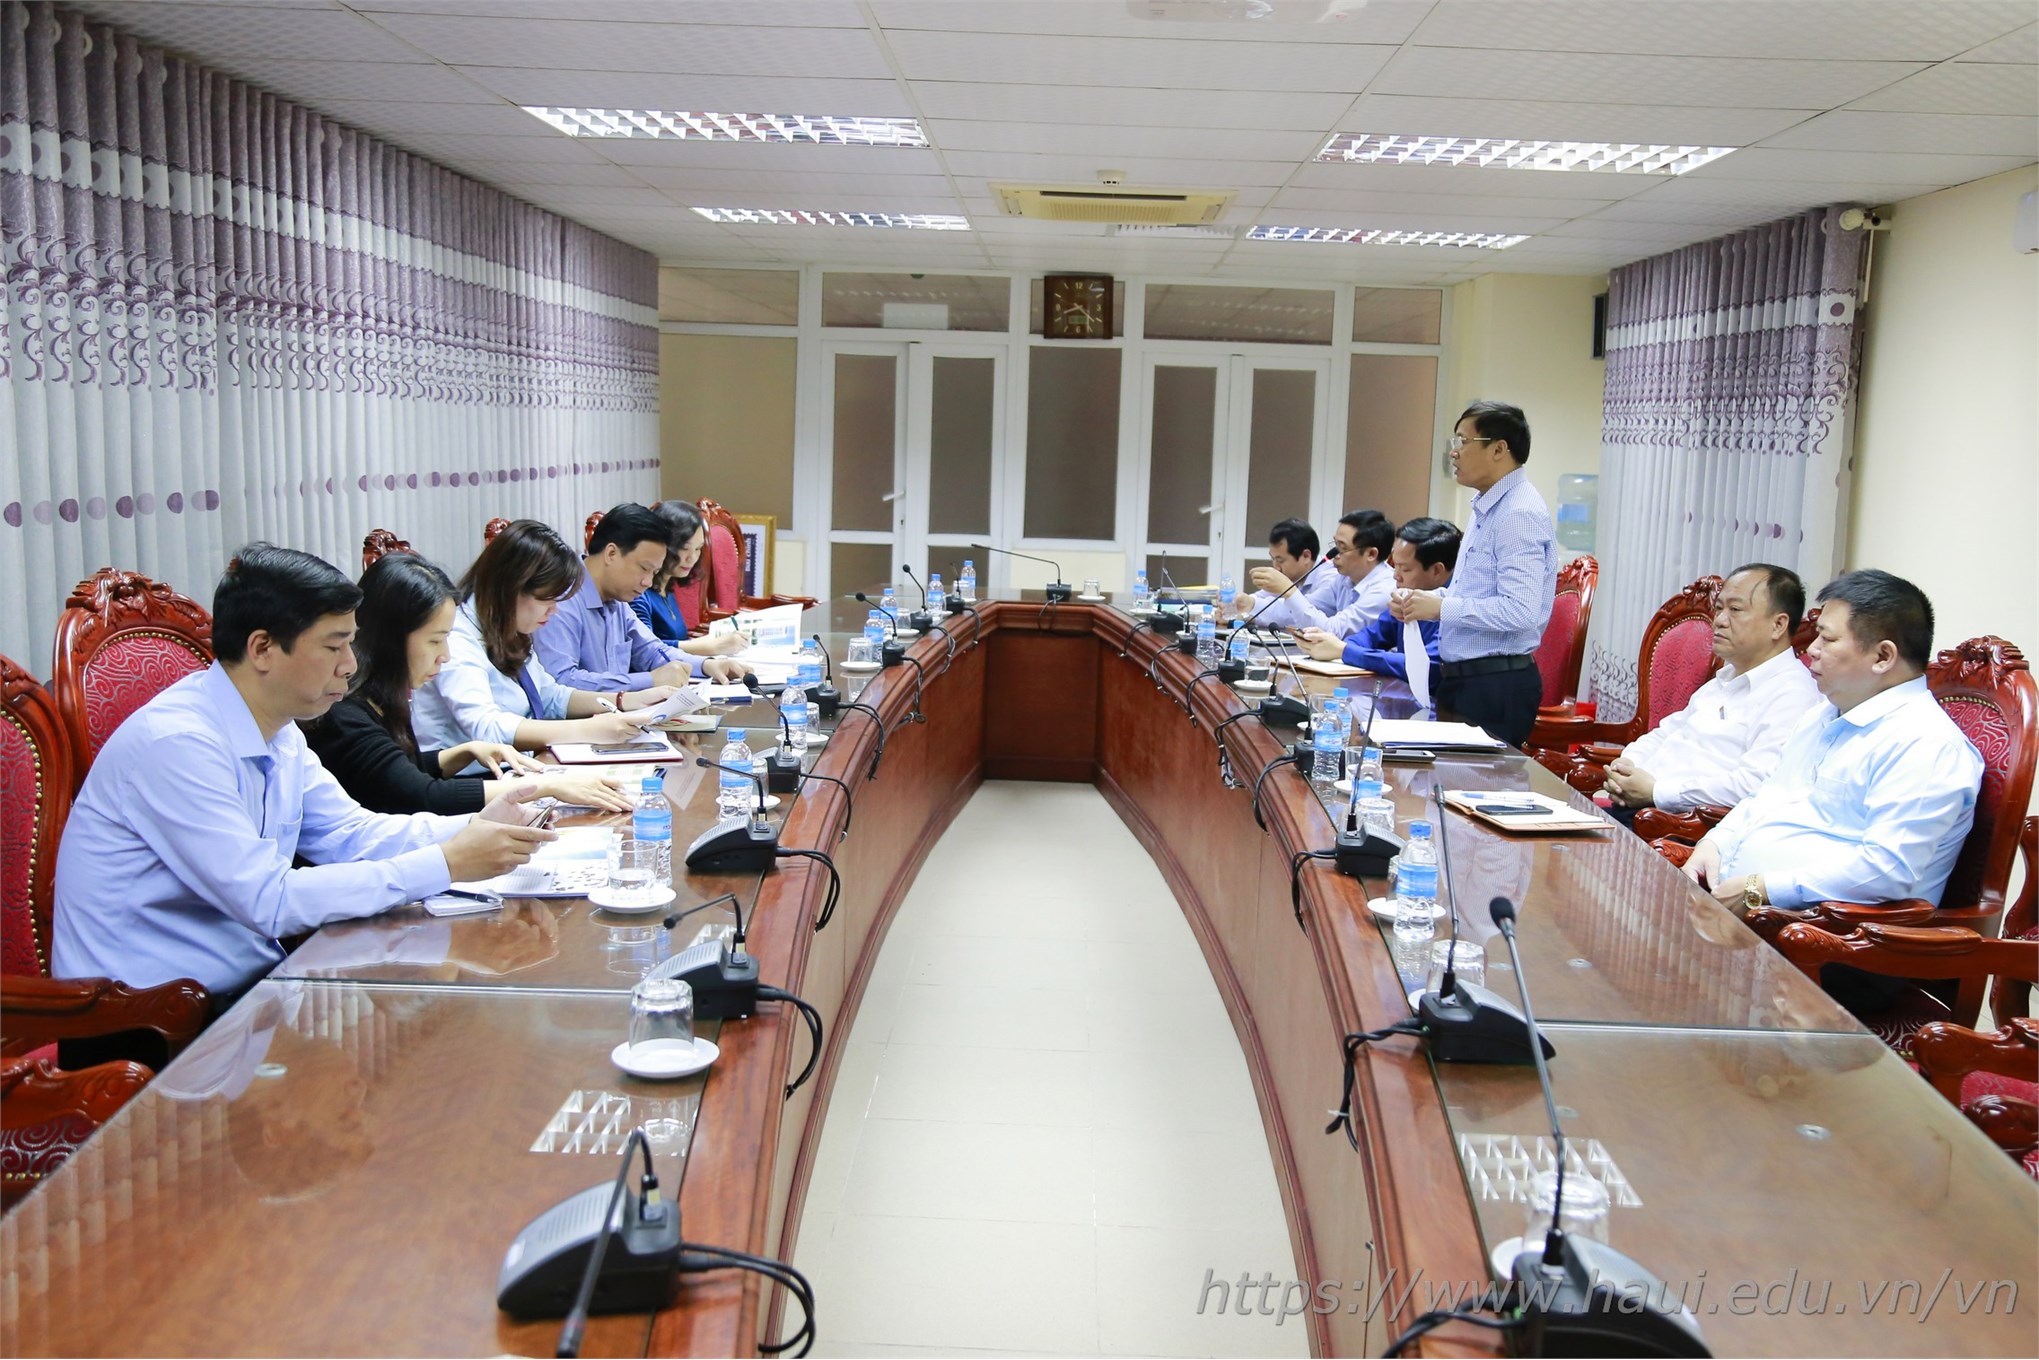 Đoàn cán bộ trường Cao đẳng Lào Cai thăm và làm việc tại Đại học Công nghiệp Hà Nội